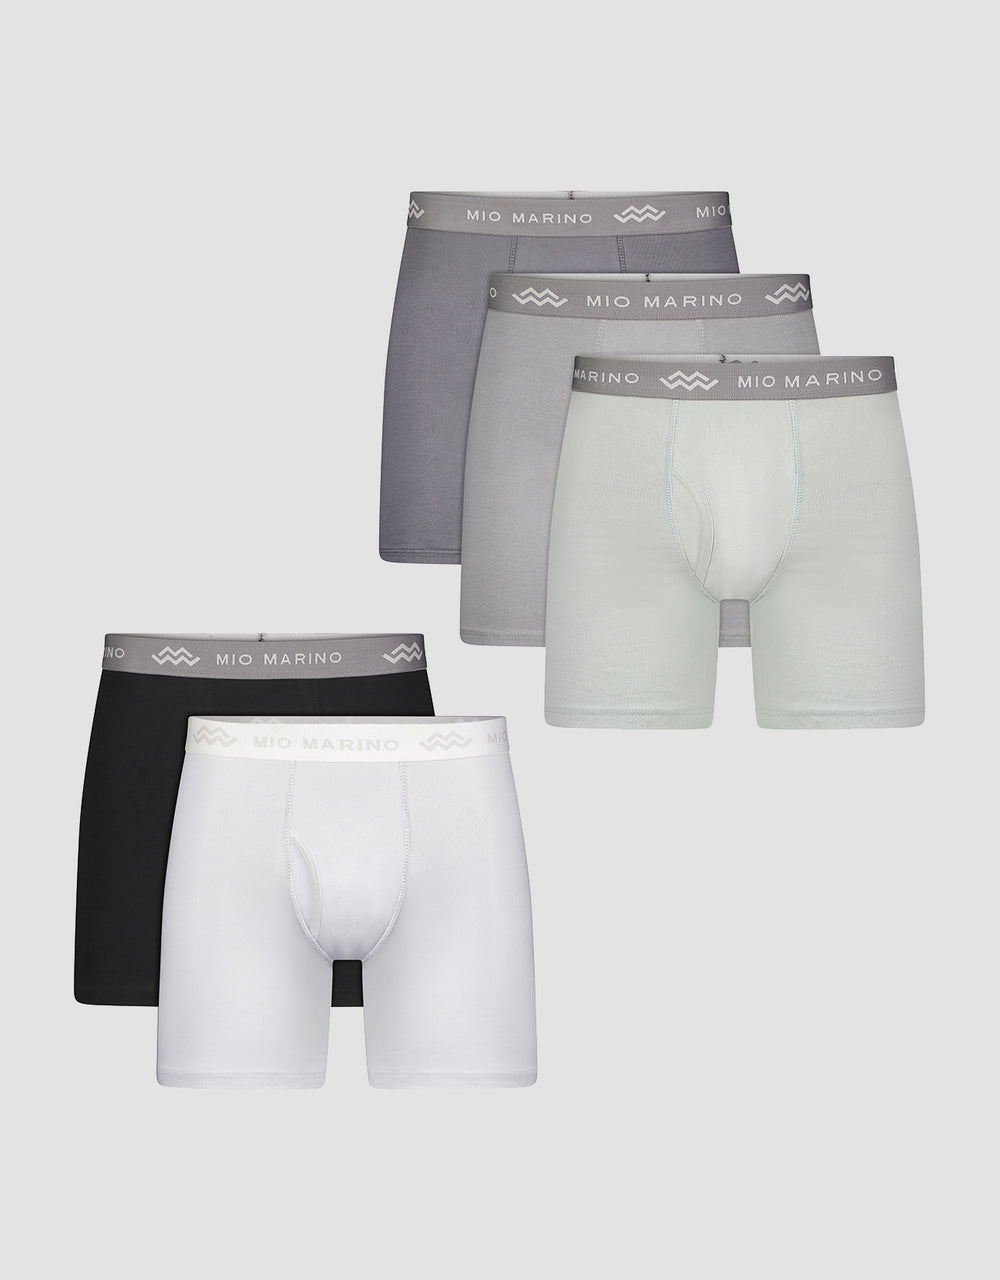 Premium Cotton Men's Boxers, 5-Pack– Mio Marino